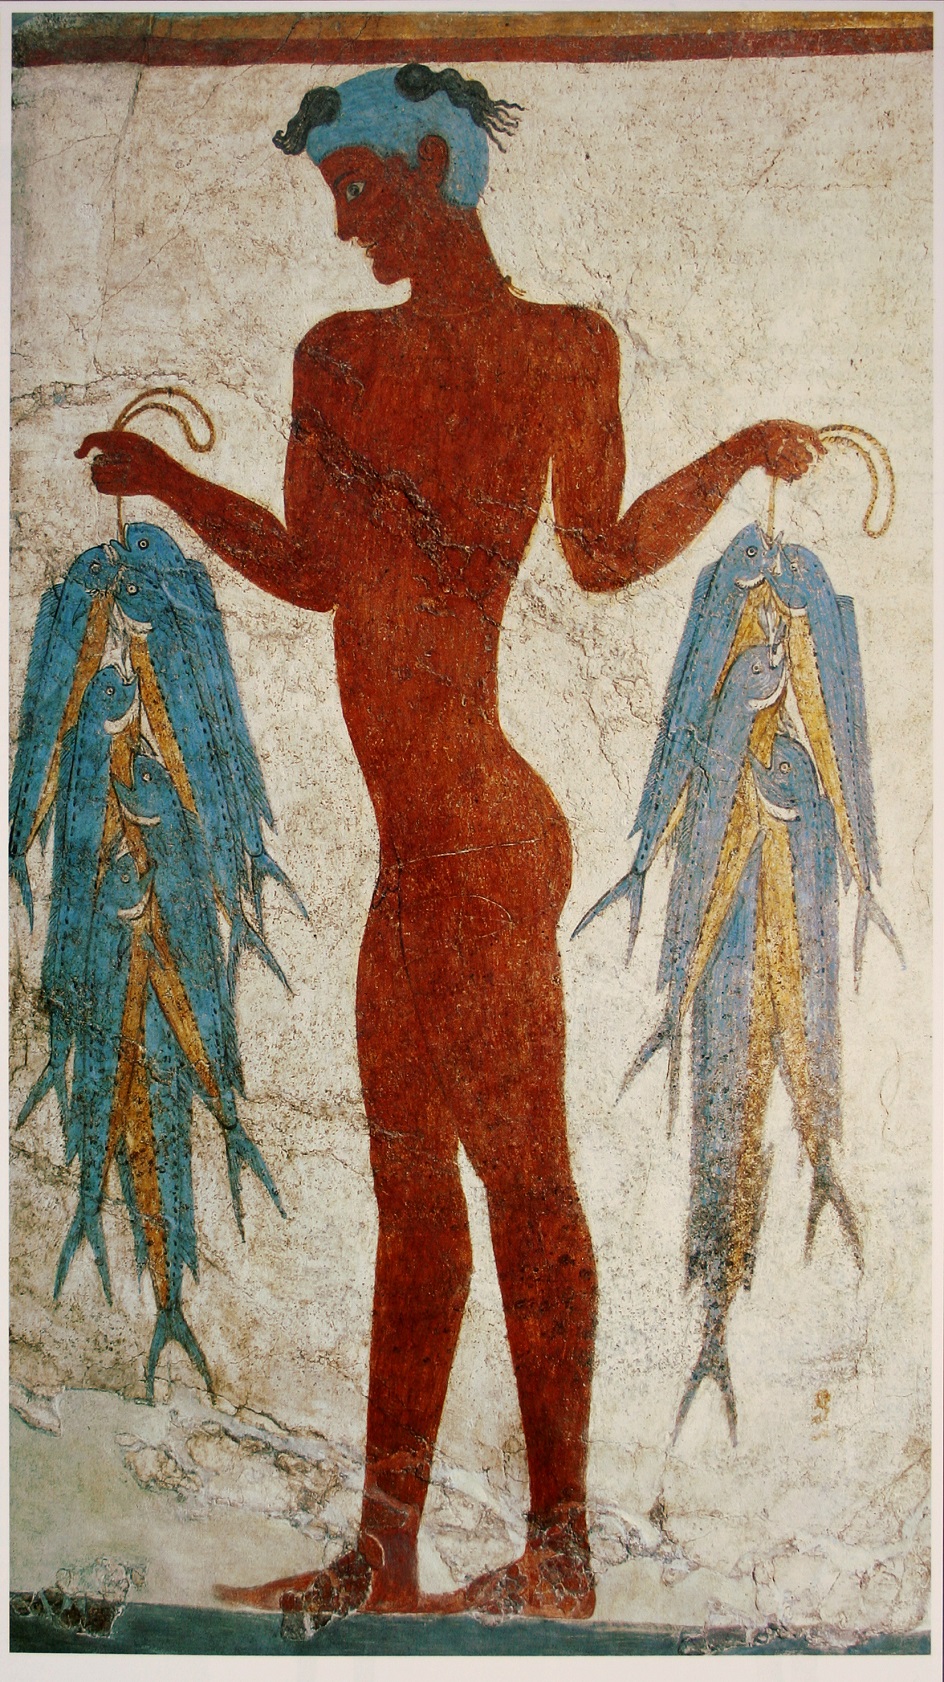 Фреска. Фреска Минойской цивилизации с острова Санторини. XVII век до нашей эры